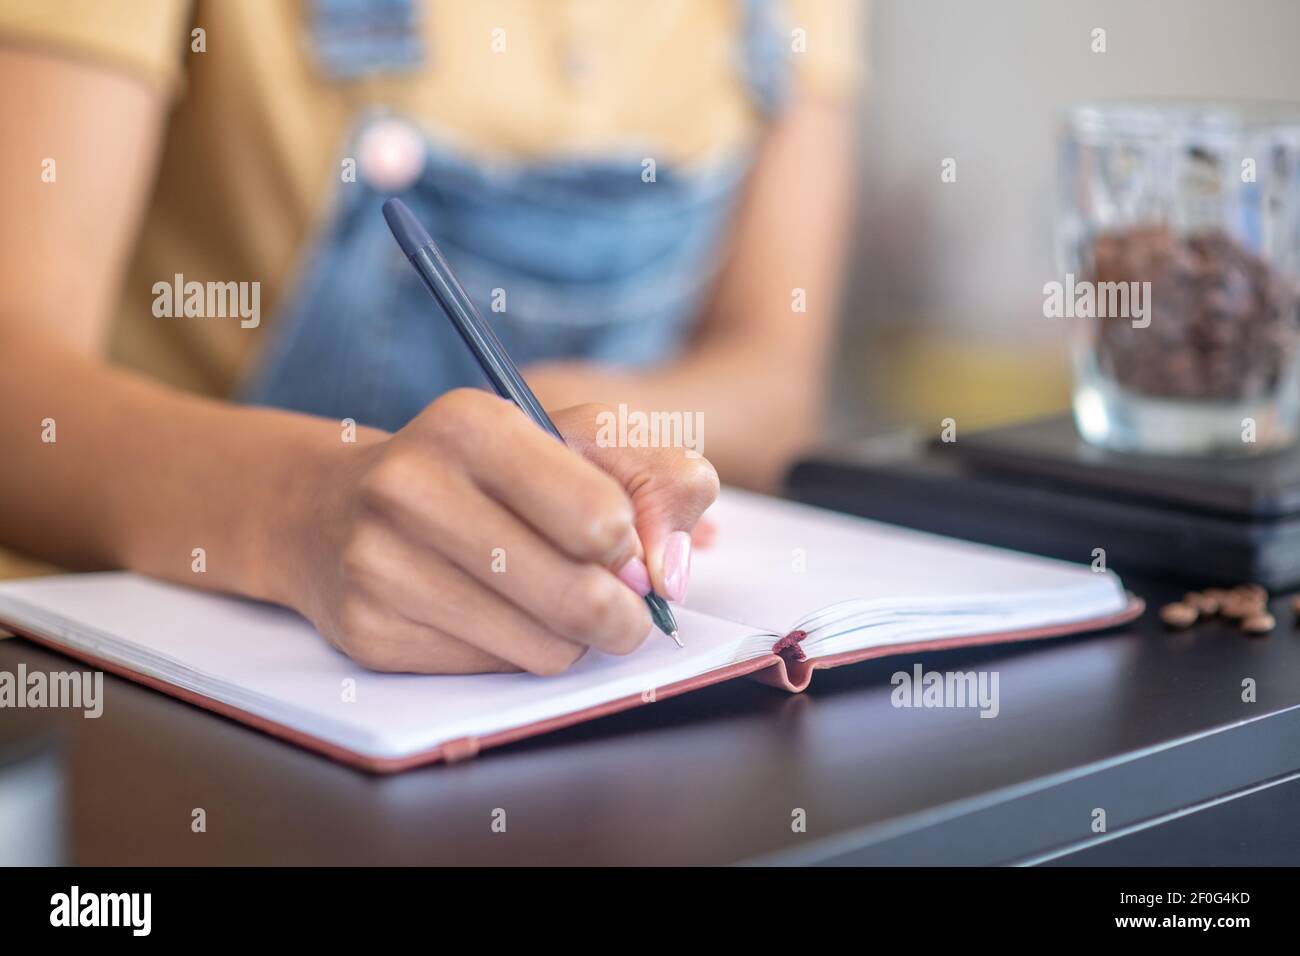 Scrittura a mano femminile con penna in taccuino sul bancone Foto Stock